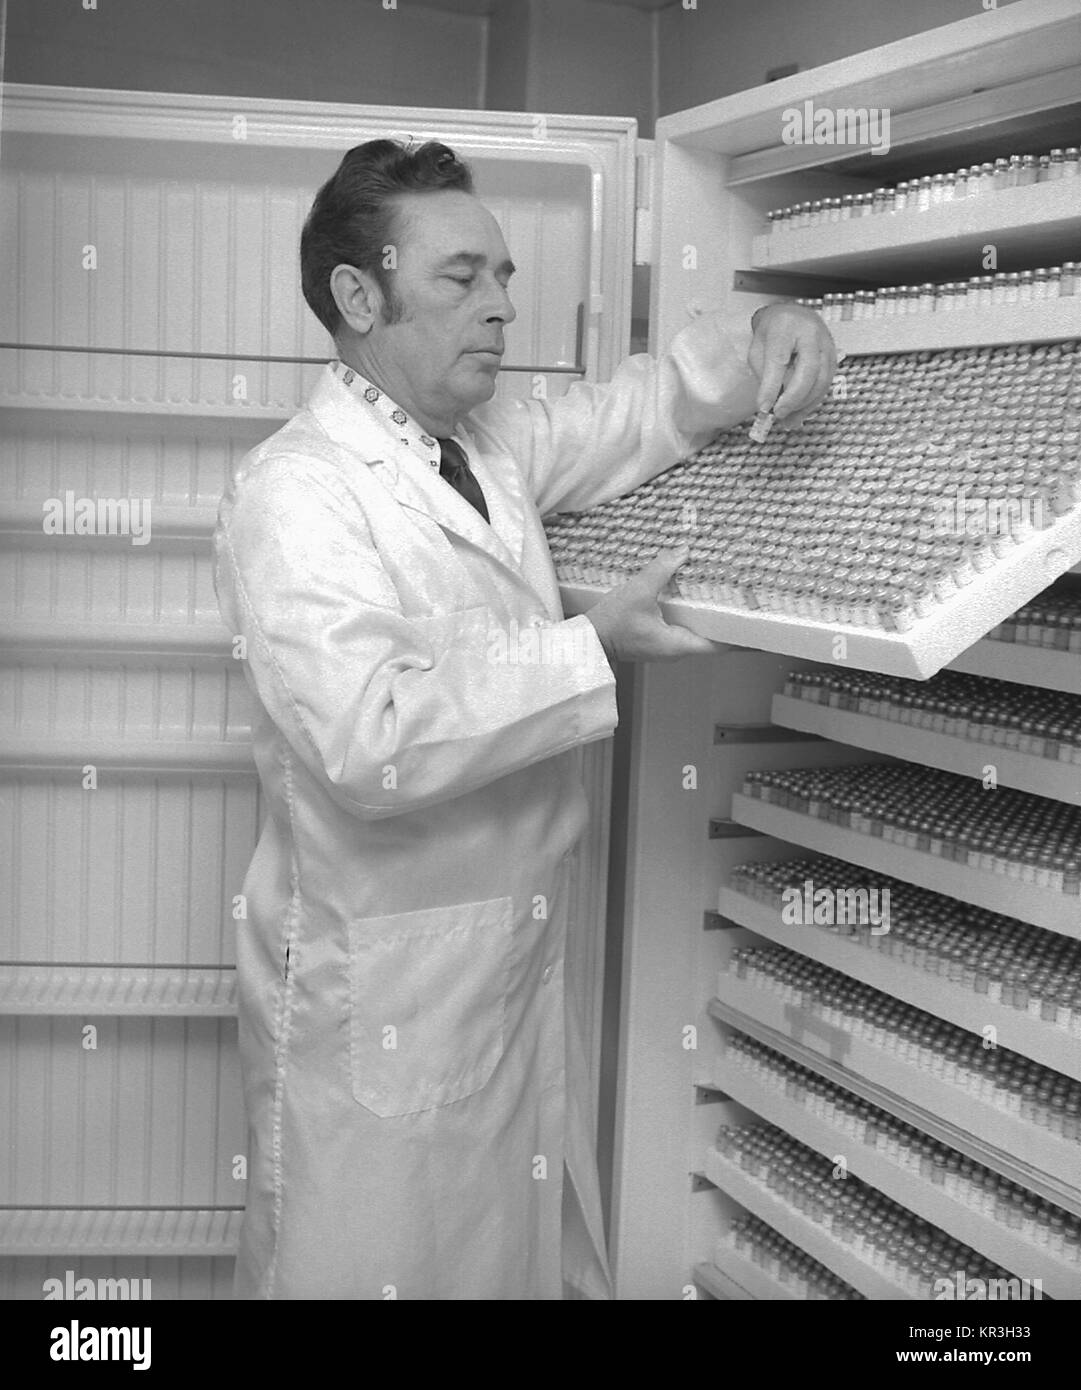 Technicien de laboratoire Chuck Peters examine les étiquettes sur les fioles de sérum, 1977. Flacons de sérum contiennent des informations sur la nutrition, la santé, des maladies et des styles de vie, 1977. Image courtoisie CDC/K. Seigneur. Banque D'Images